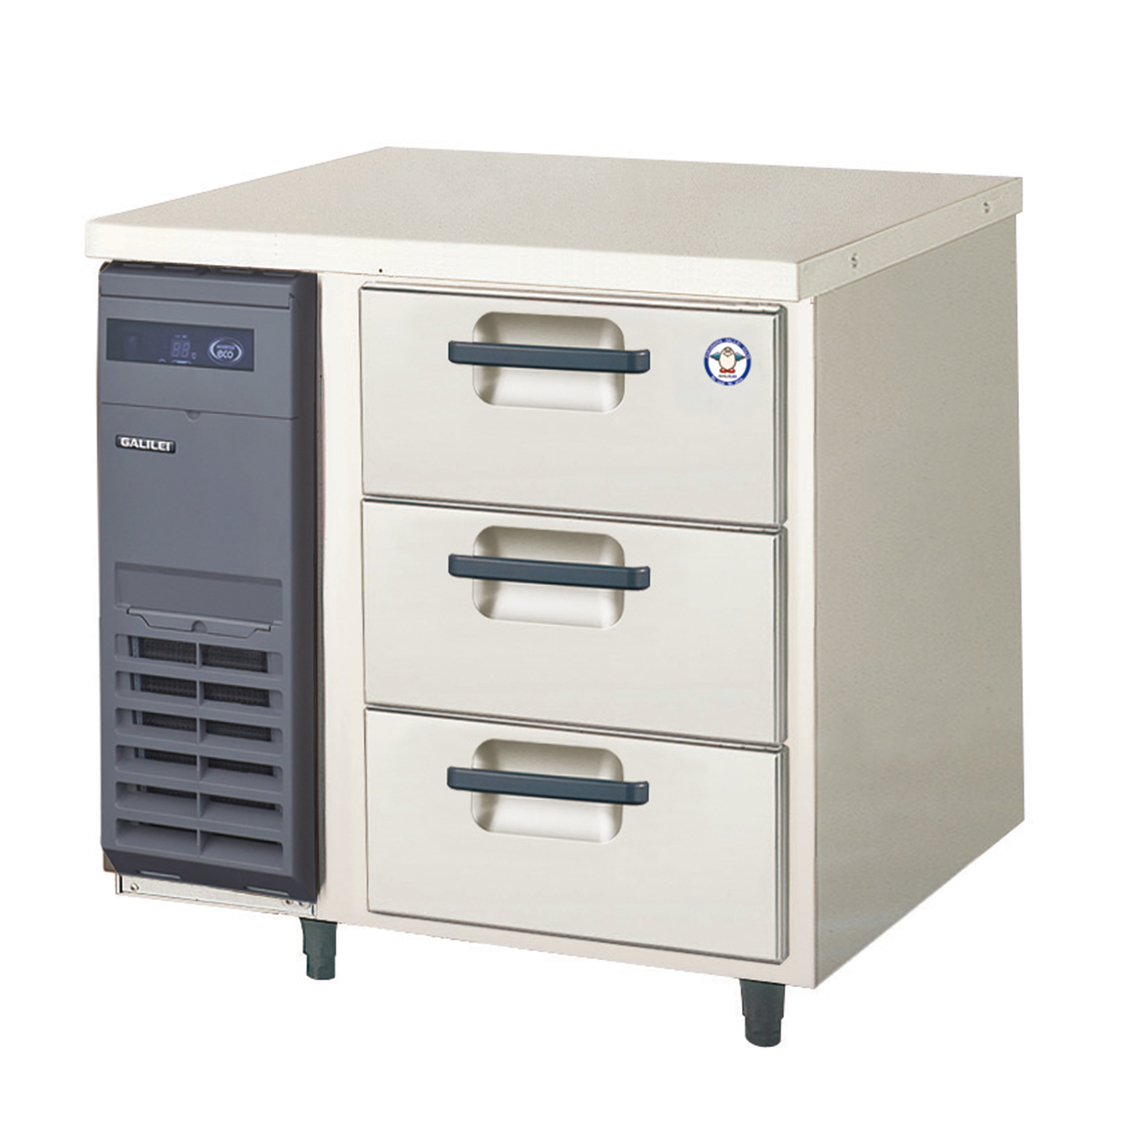 LDC-080RM2 フクシマガリレイ ドロワーテーブル型業務用冷蔵庫